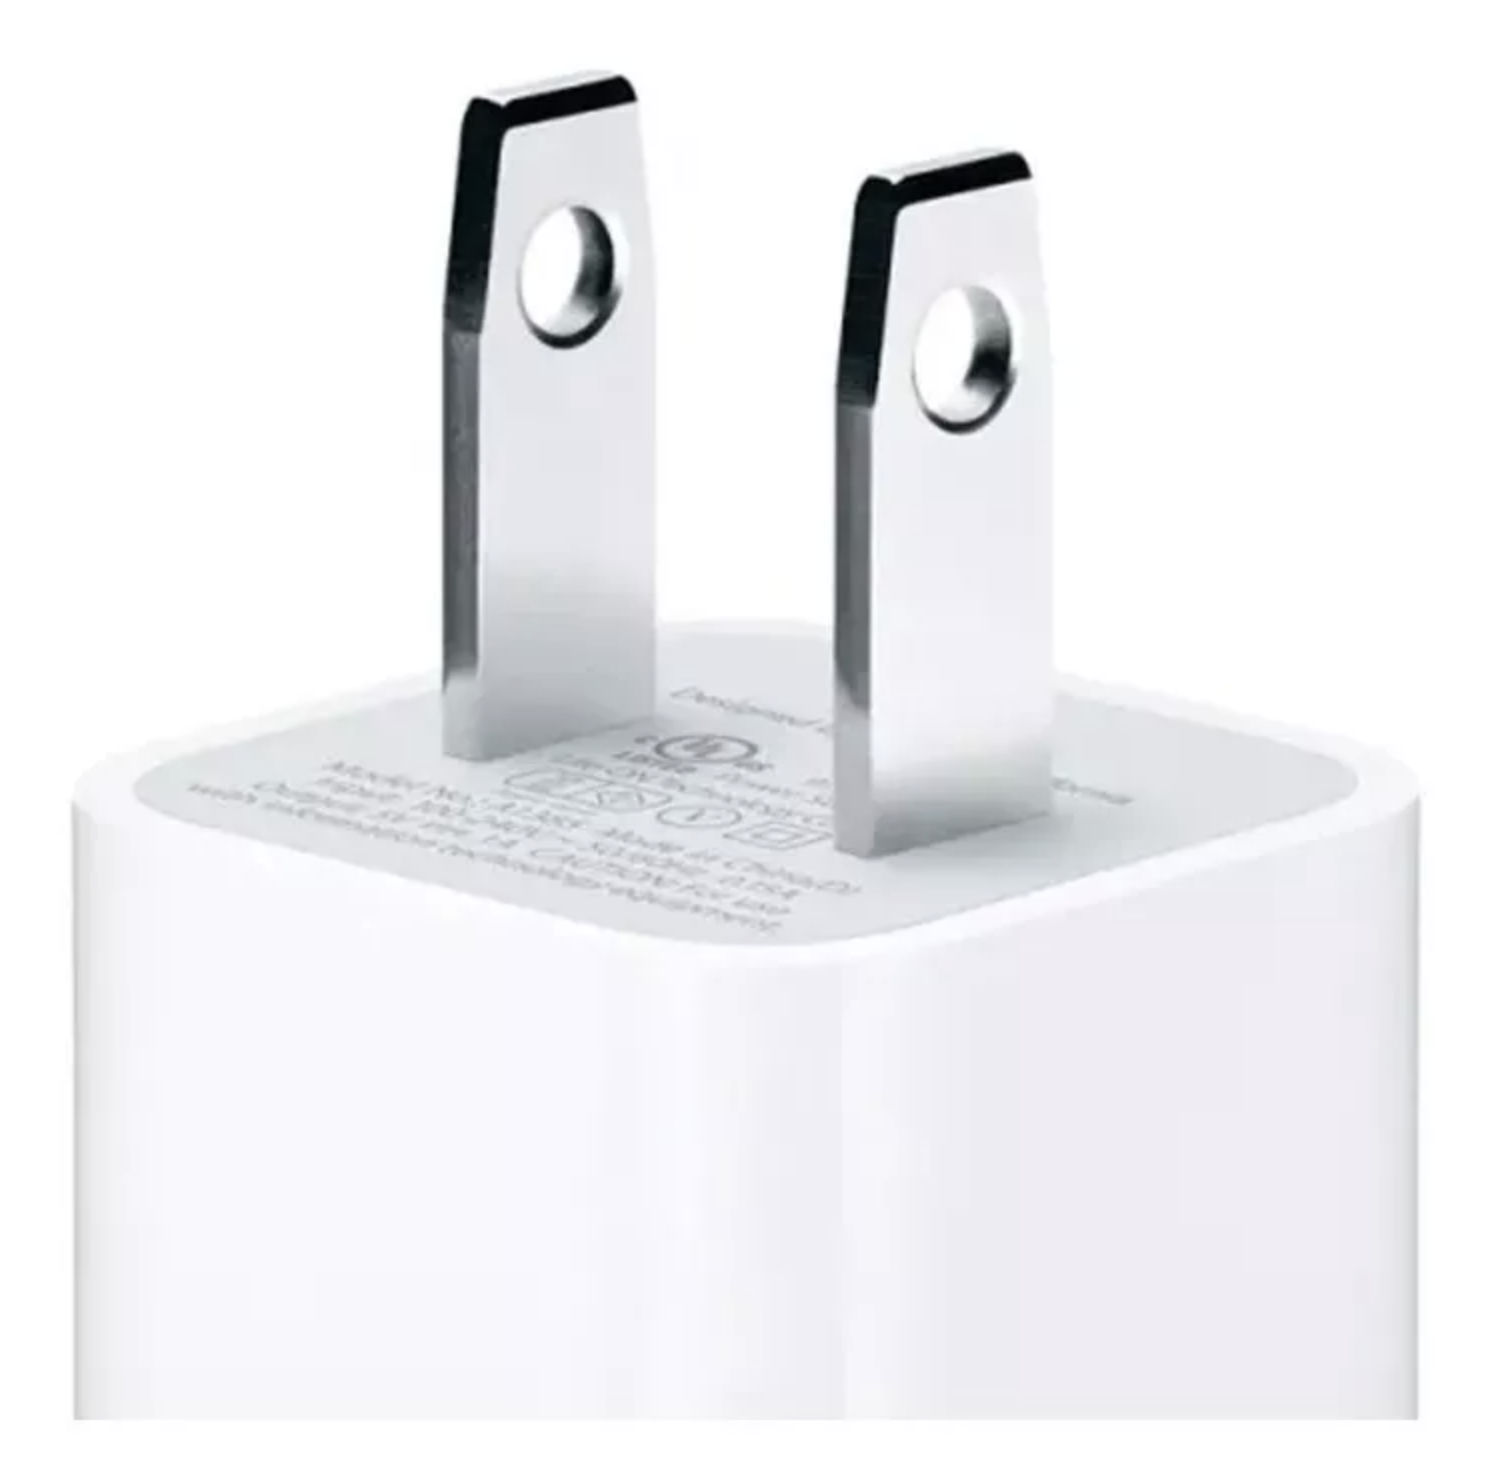 Cargador Pared iPhone 4-5-6-7-8 Modelo A1400 I Caja Sellado